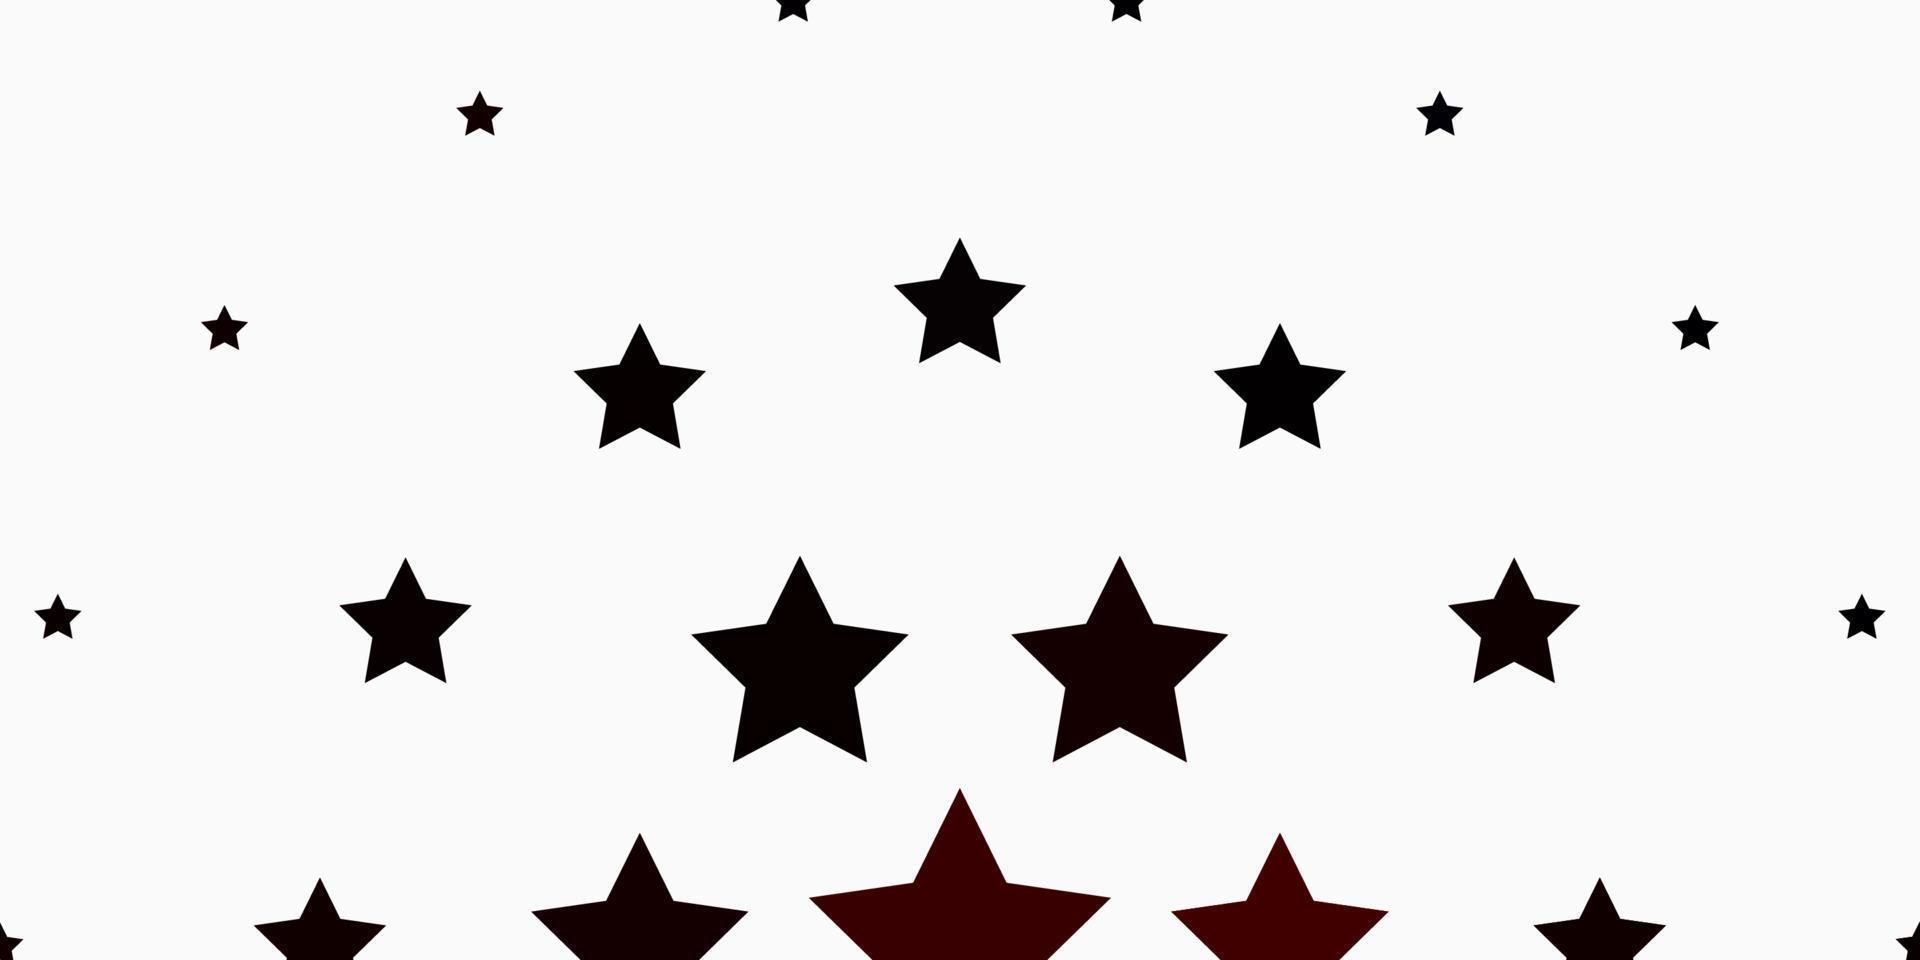 patrón de vector naranja claro con estrellas abstractas.